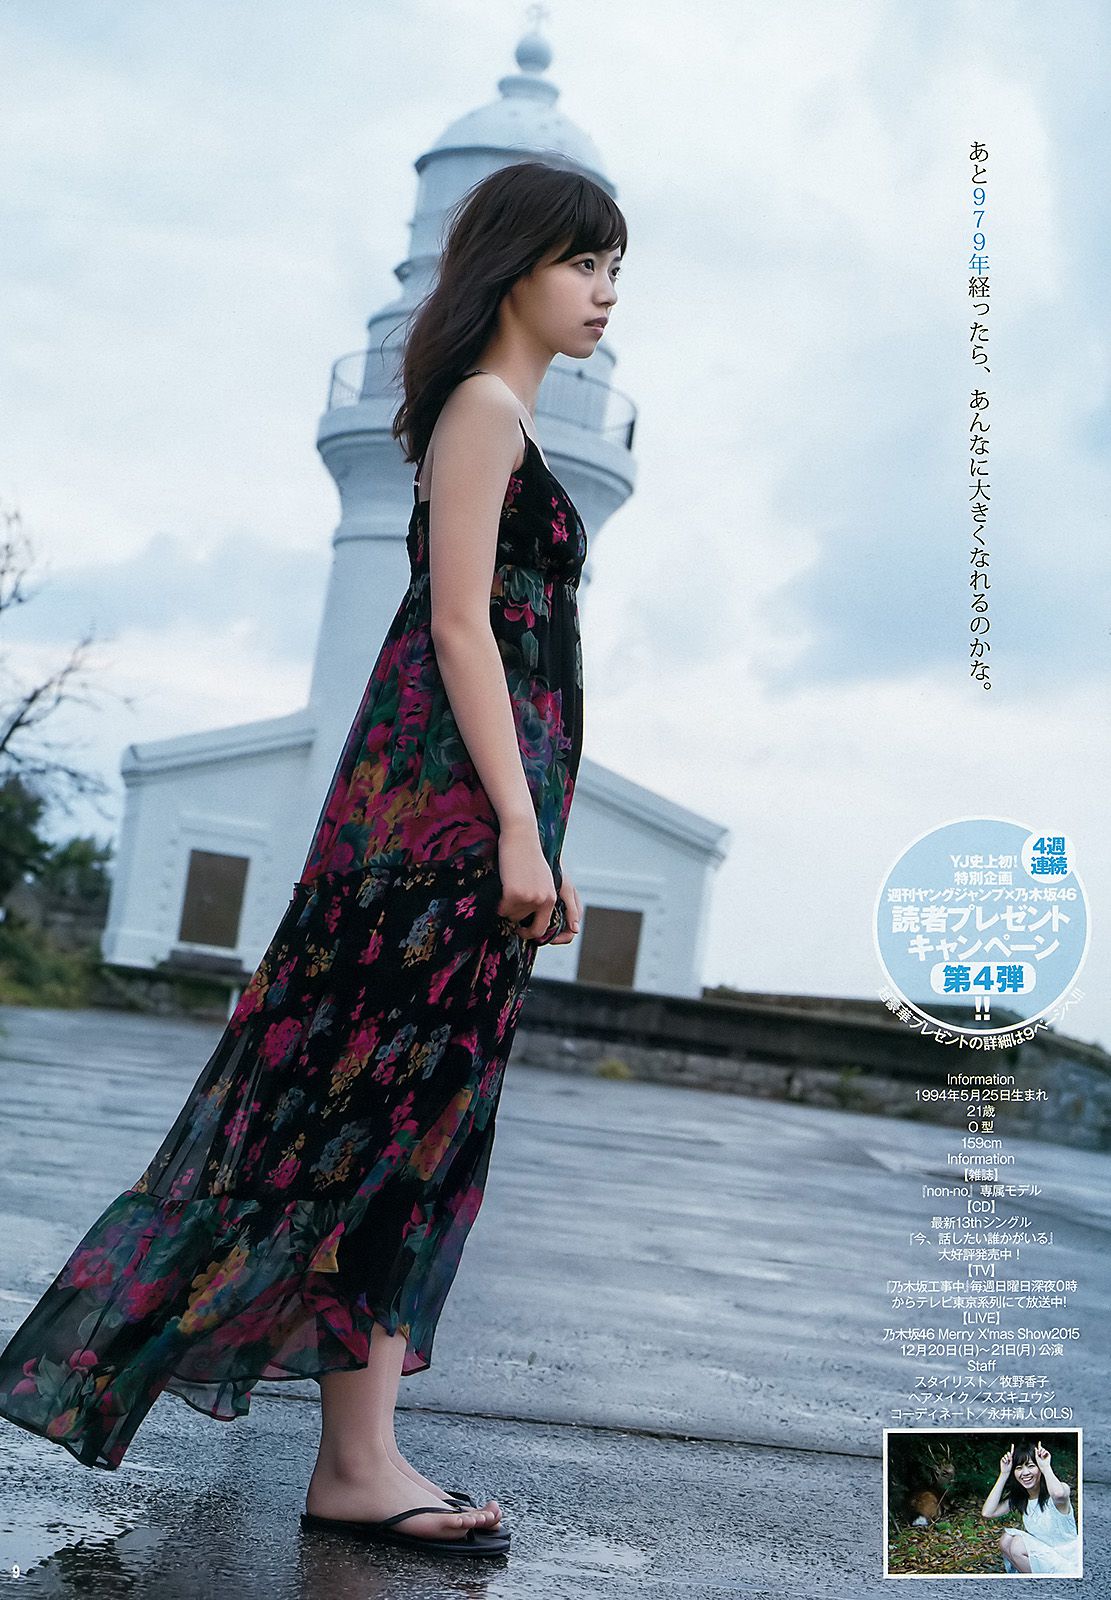 Nanase Nishino "Chapter at the foot" [Weekly Young Jump] 2015 No.50 Photo Magazine